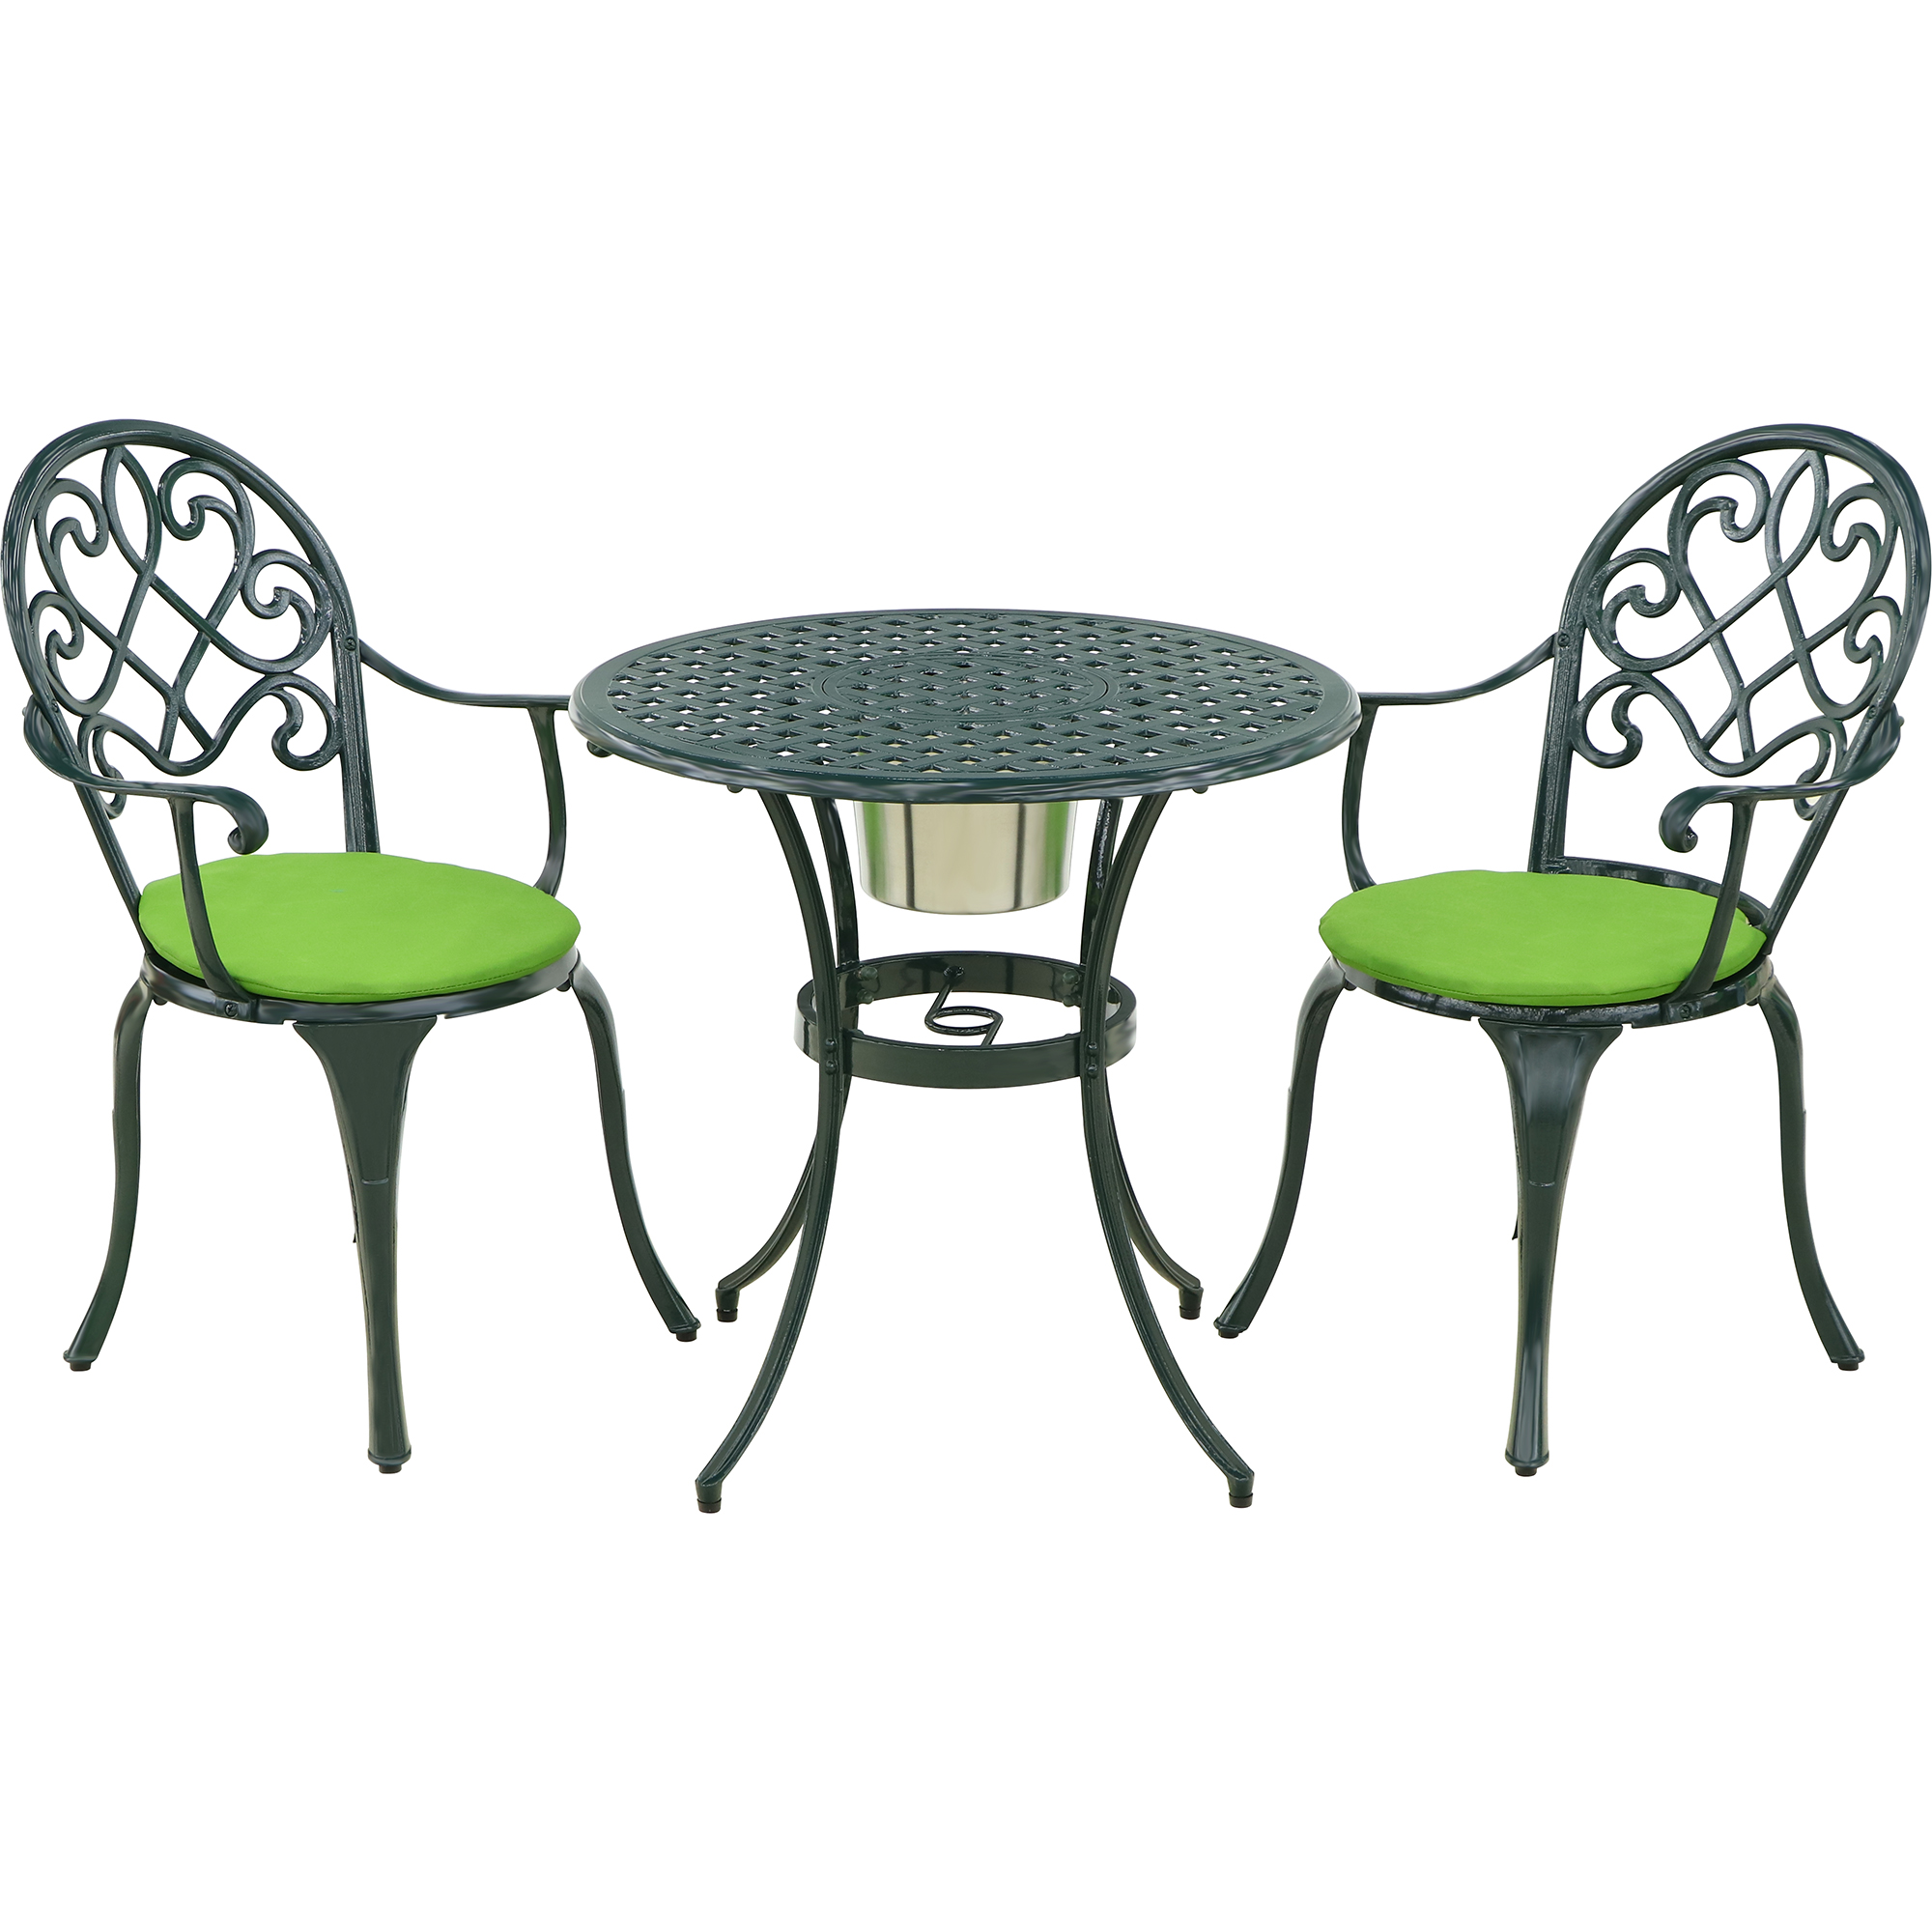 Комплект мебели Linyi 3 предмета тёмно-зеленый/салатовый